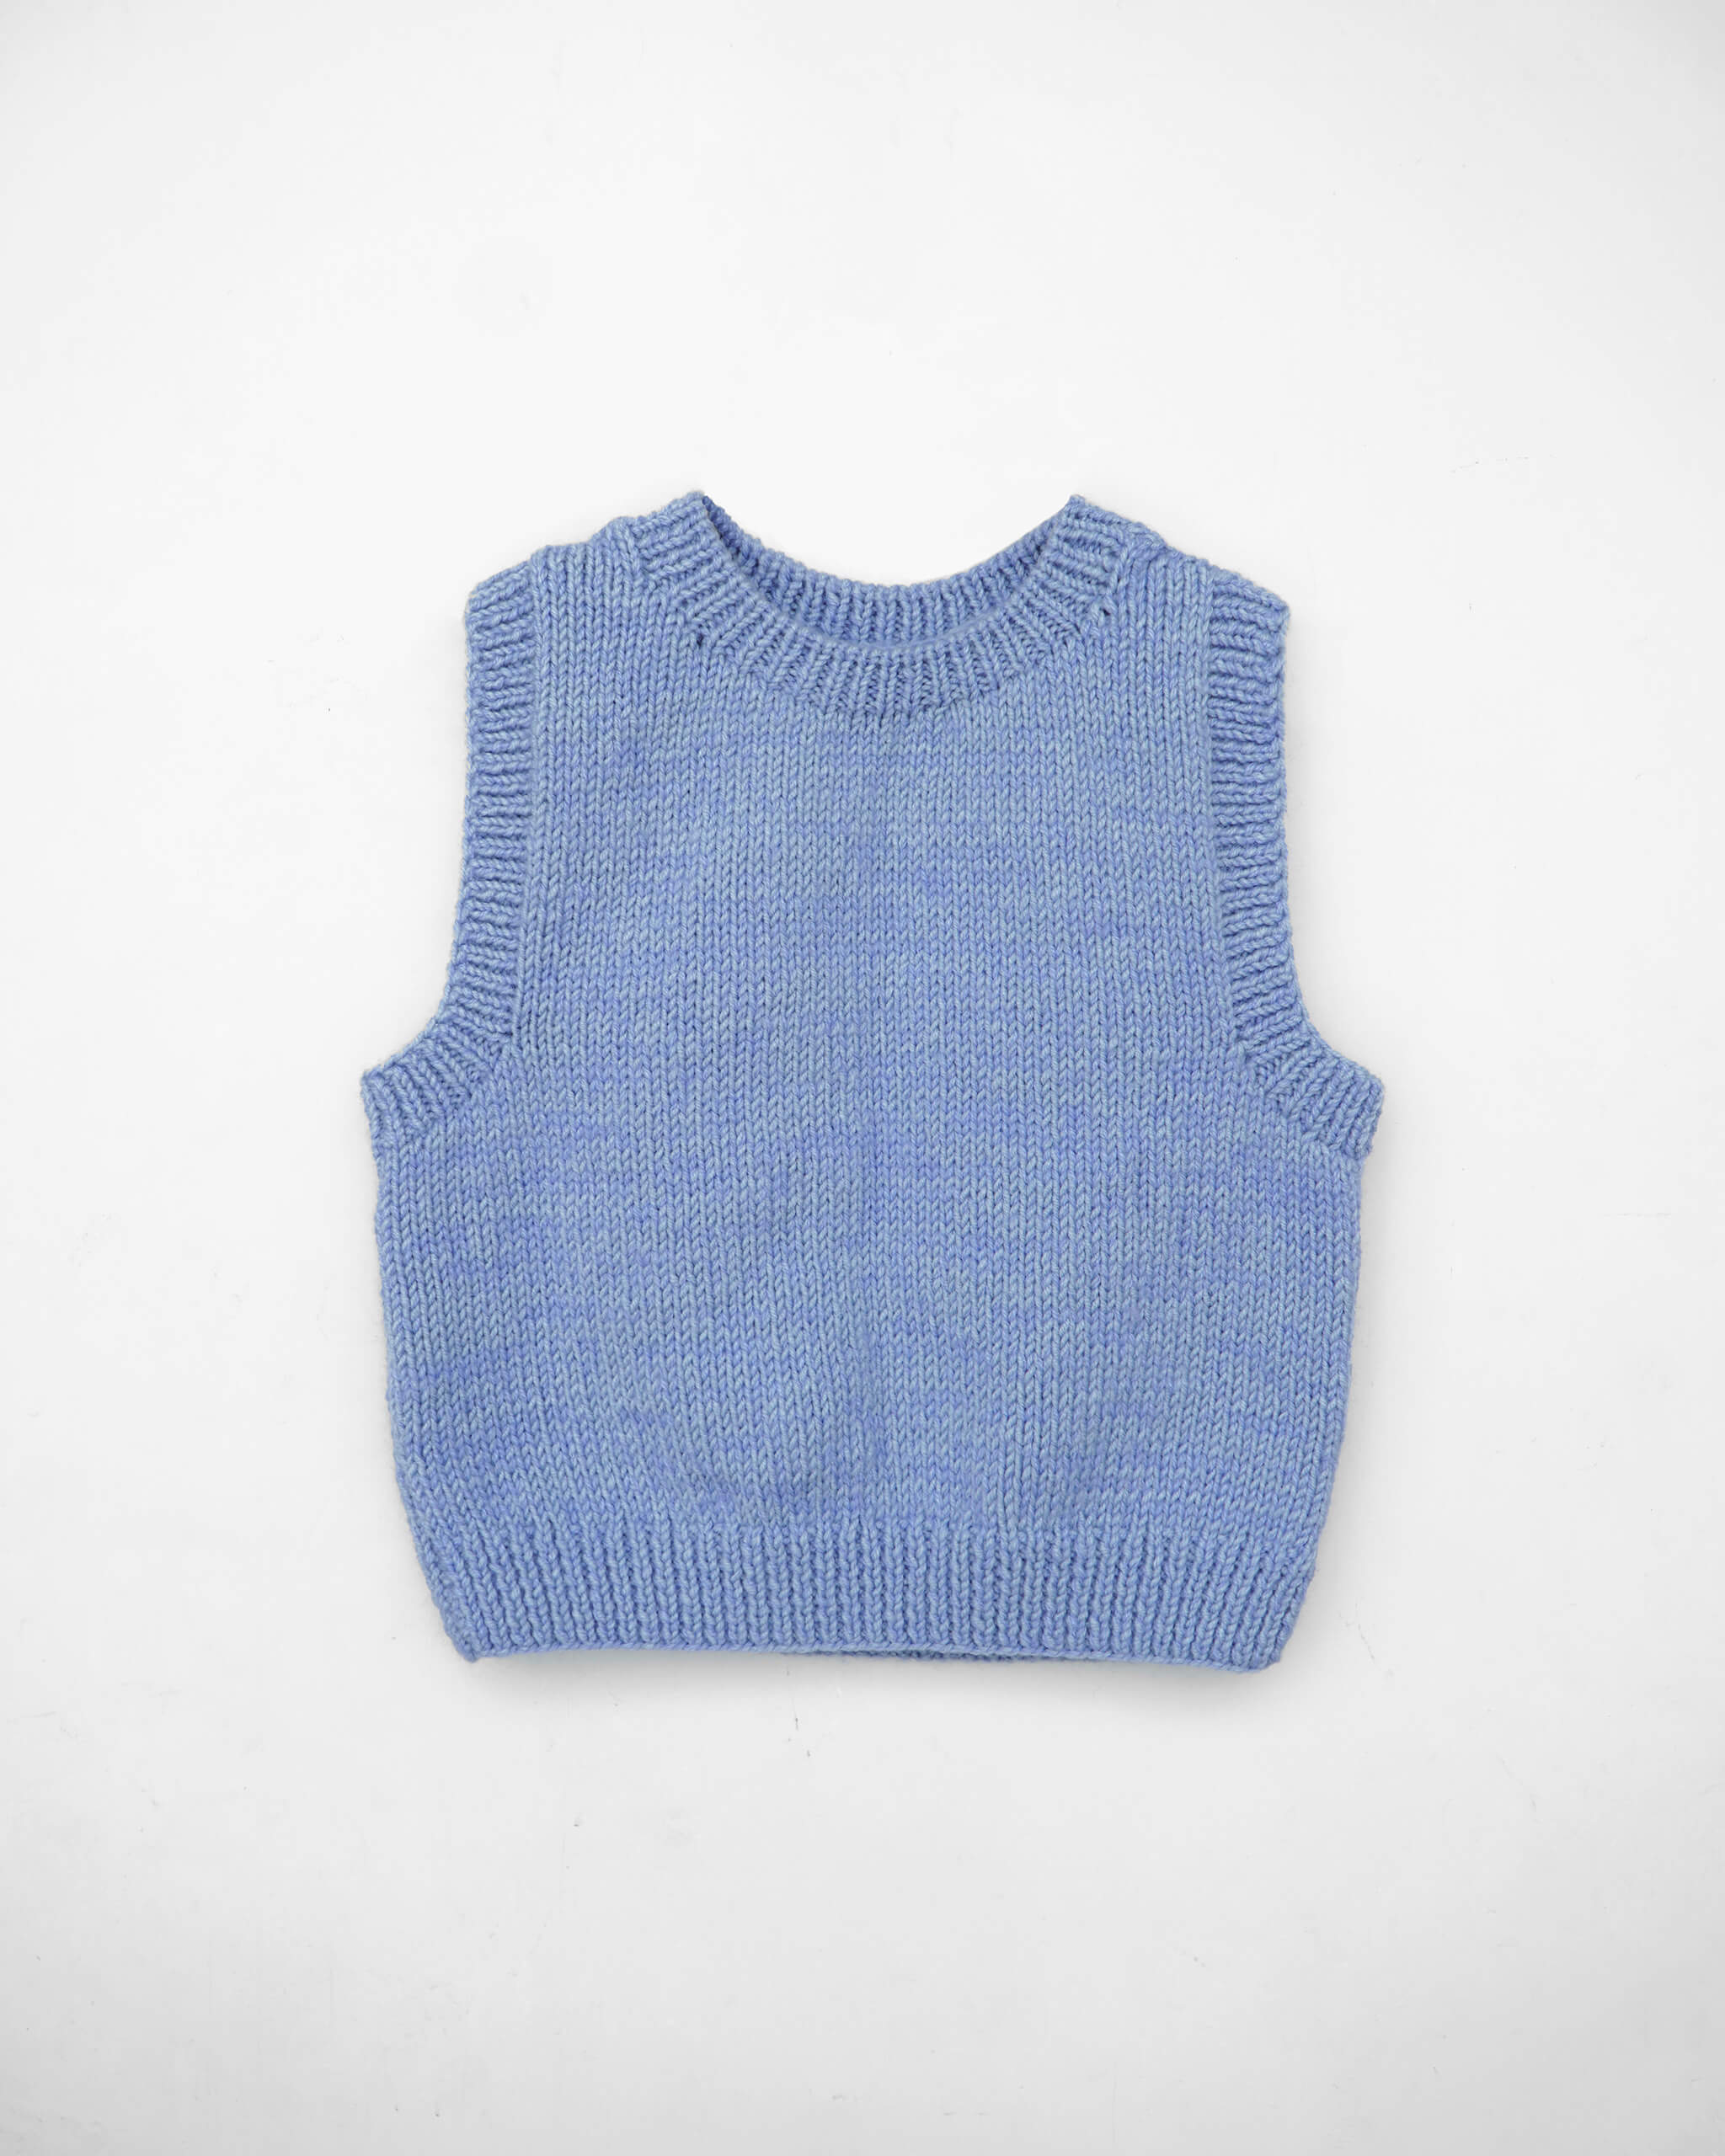 Vest No.37 | Chunky vest knitting pattern